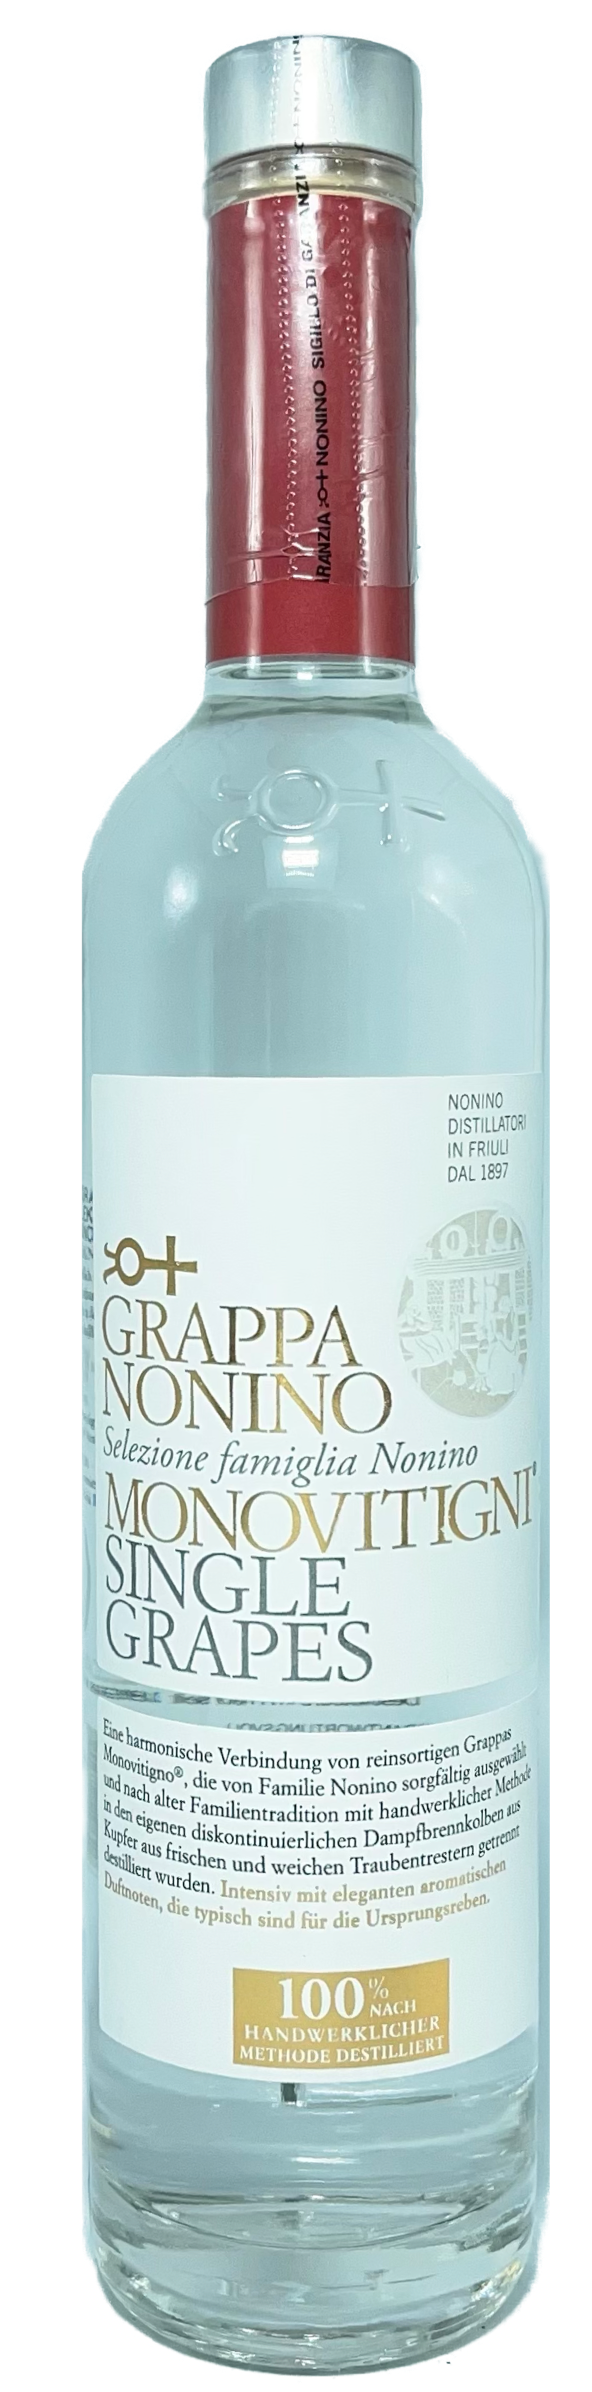 Nonino Grappa Single Grapes Monovitigni 40% vol. 0,5L